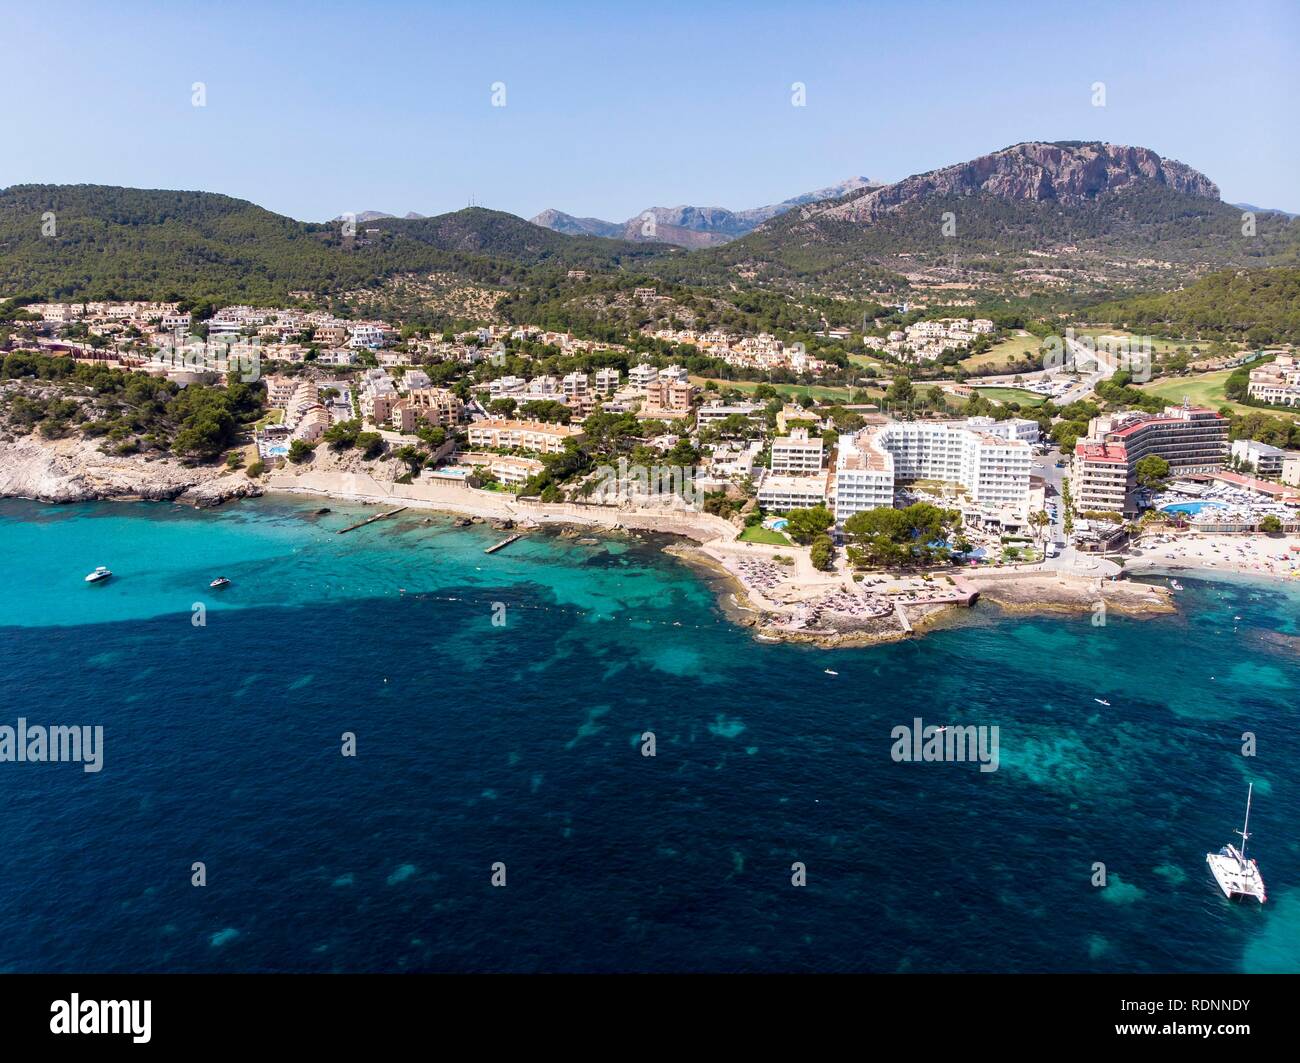 Vista aérea, Camp de Mar con hoteles y playas, Camp de Mar en Costa de la Calma, Mallorca, Islas Baleares, España Foto de stock